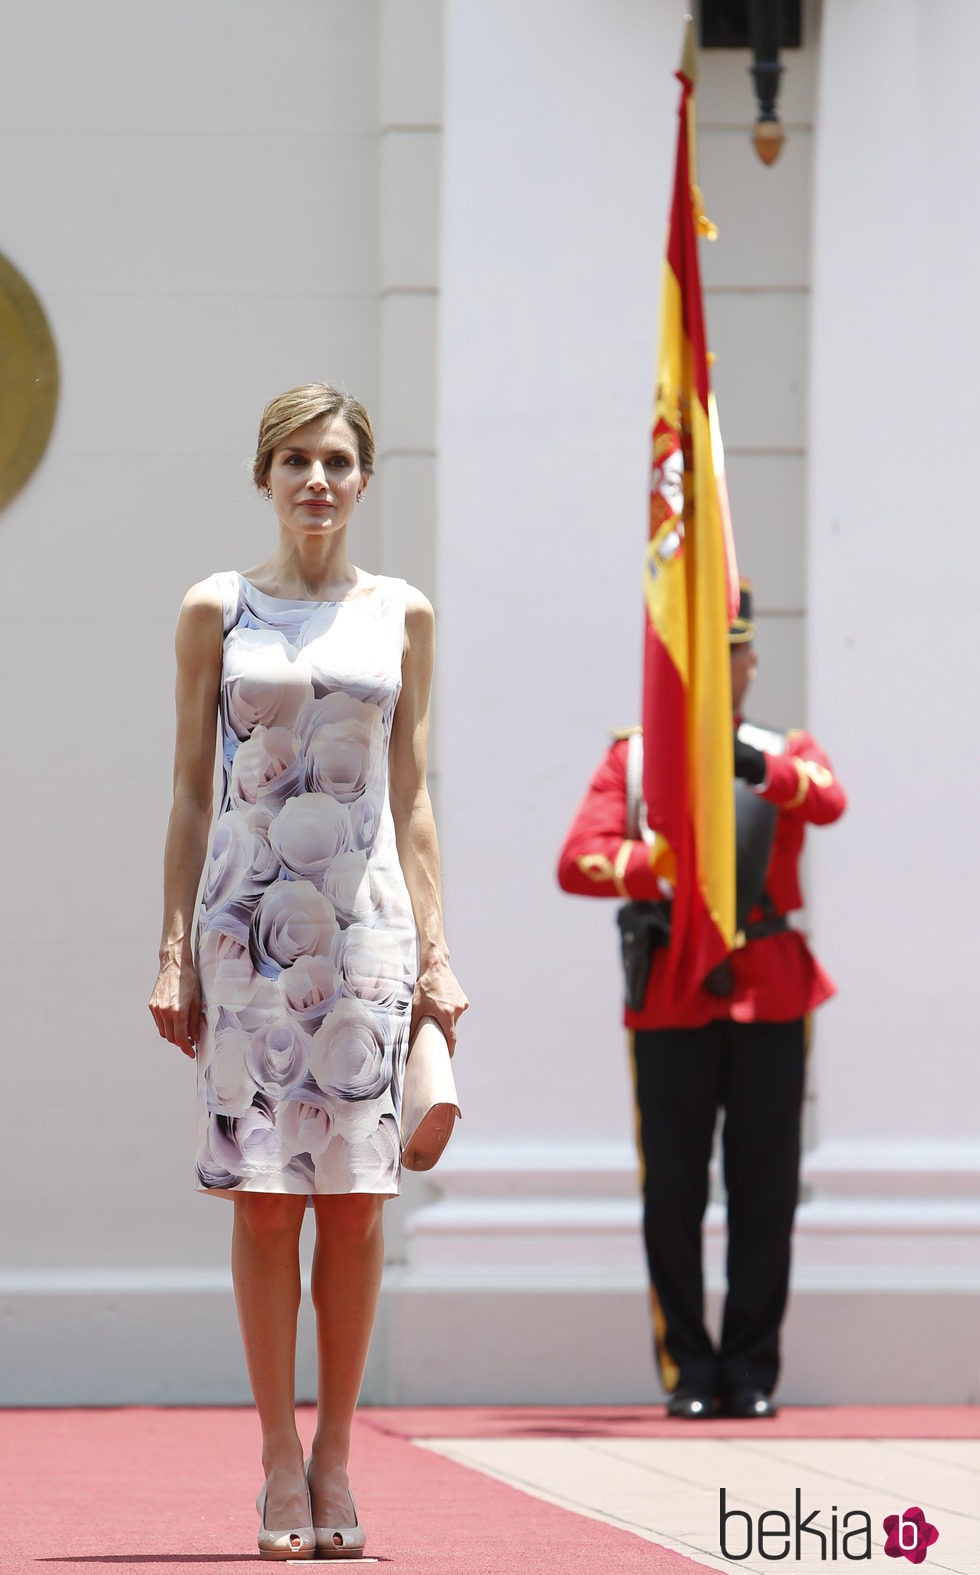 La Reina Letizia con un vestido de Hugo Boss en El Salvador